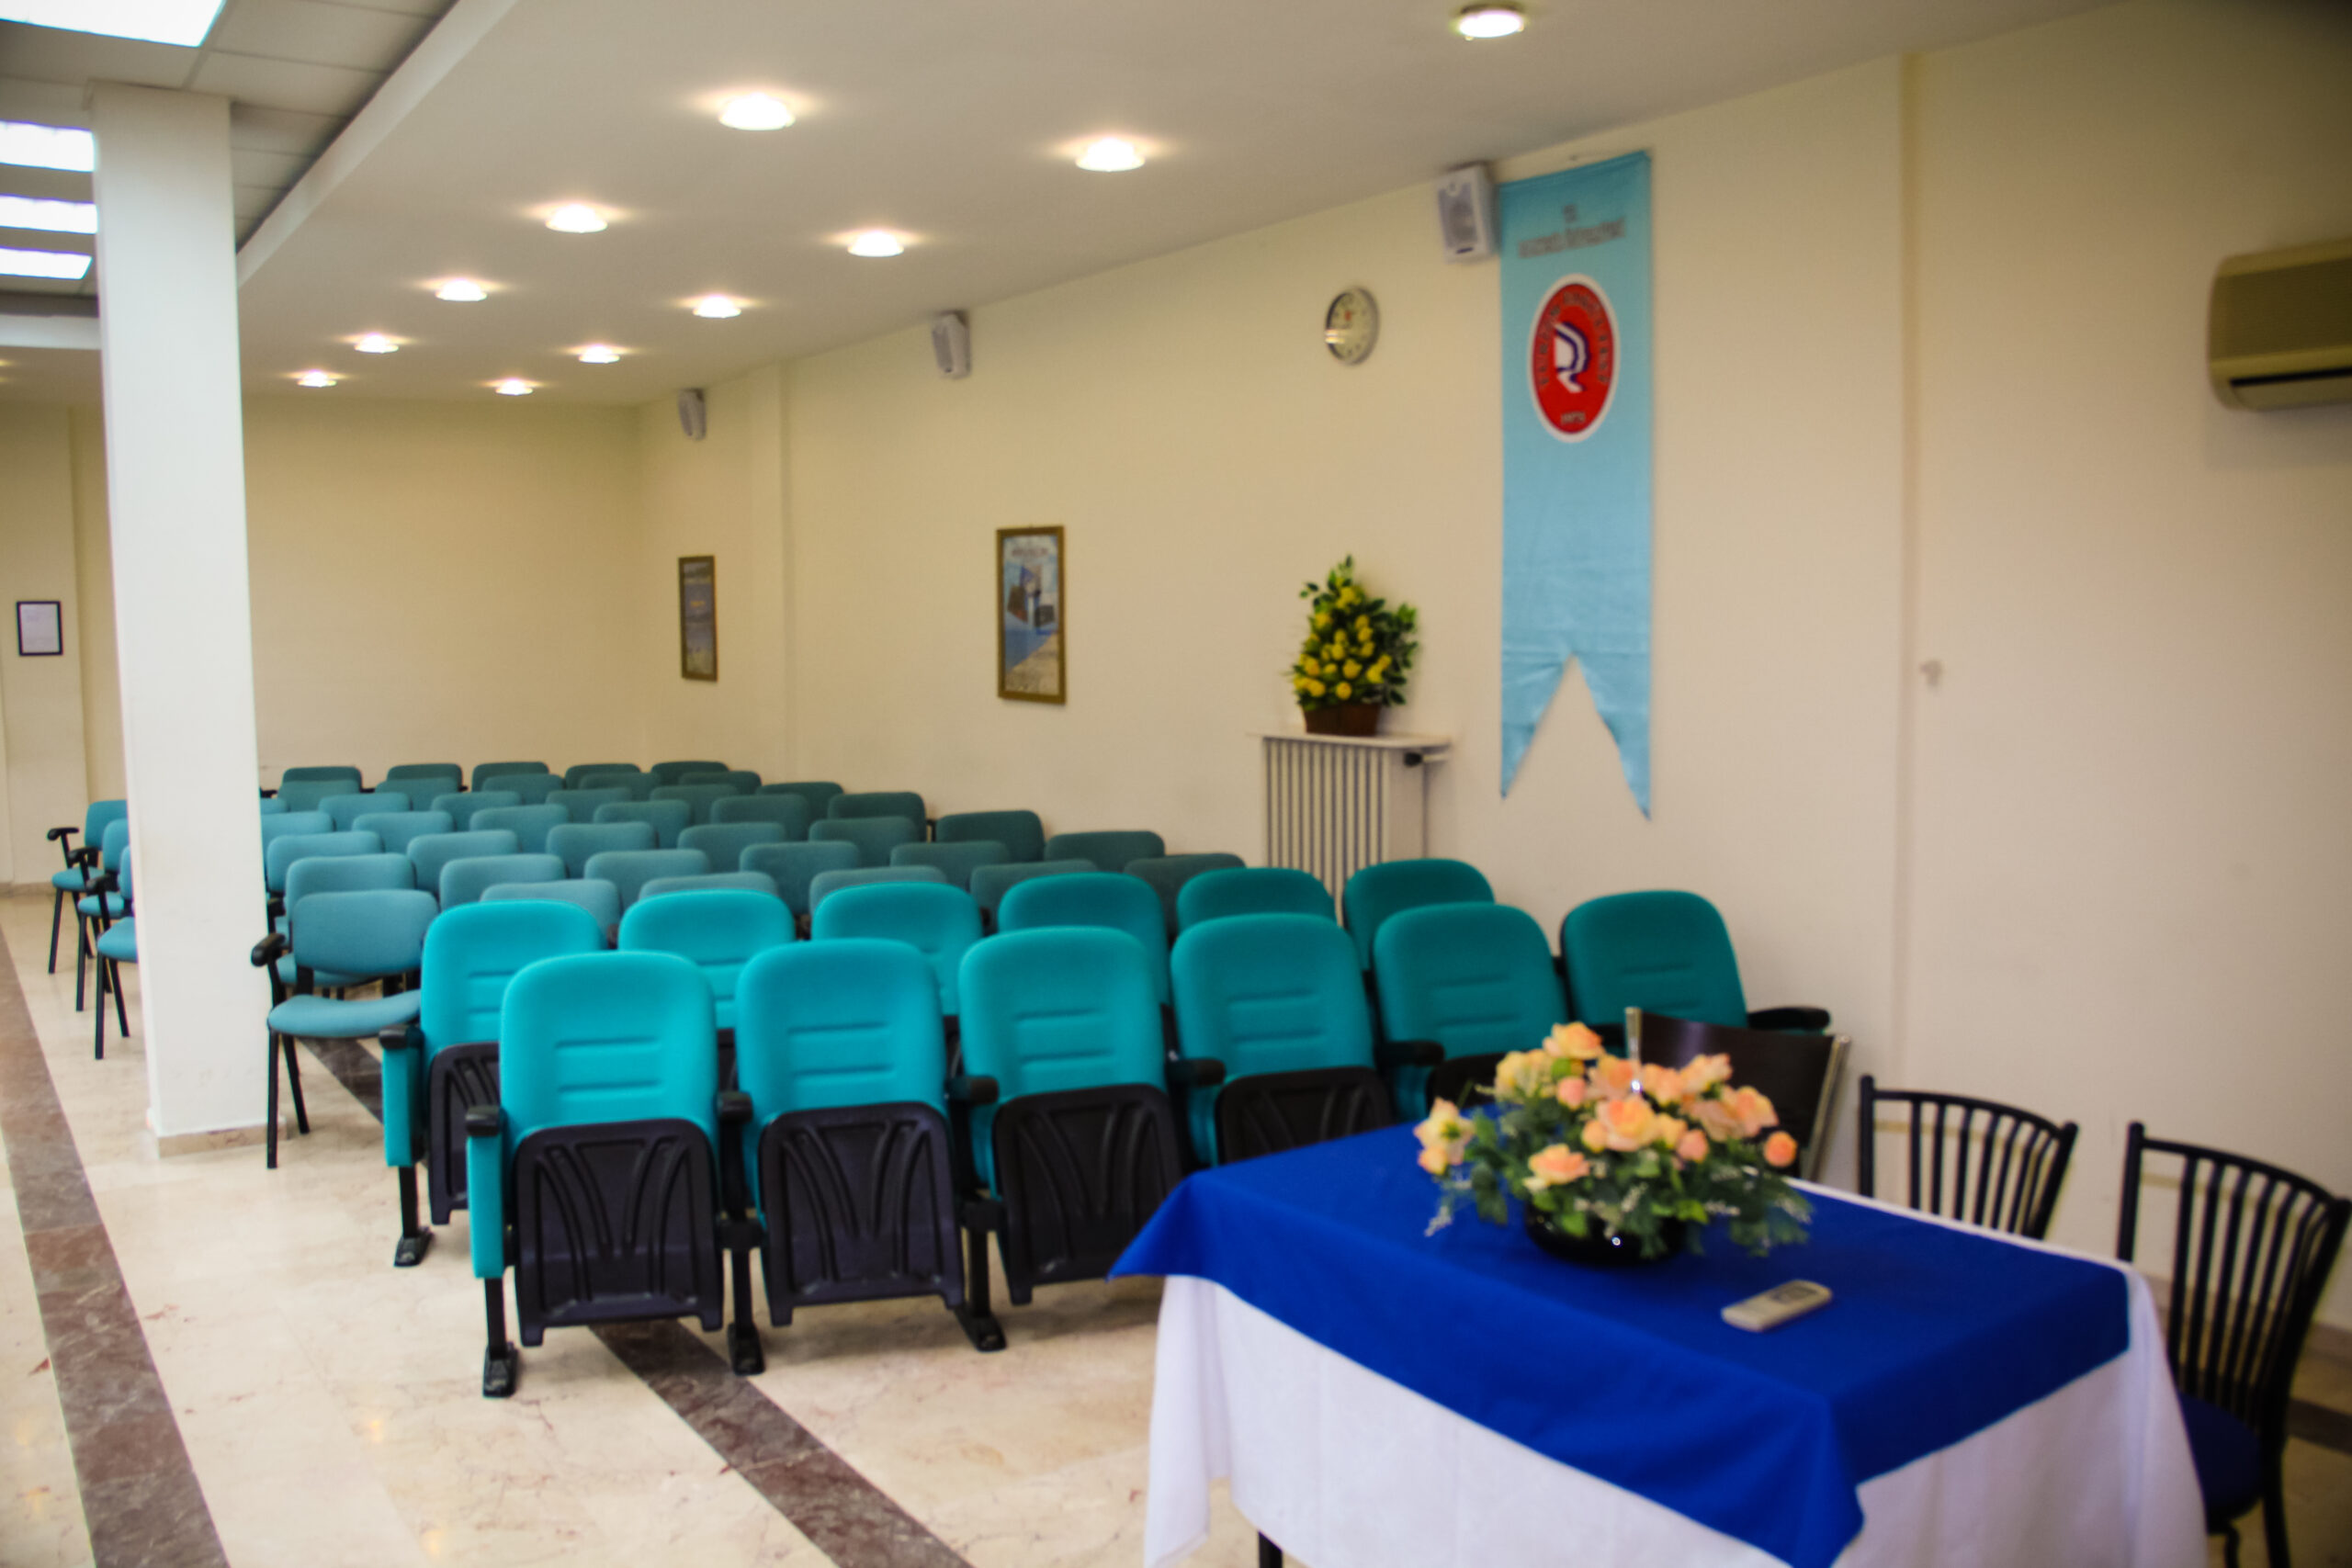 balikesir universitesi find and study 5 scaled - Balıkesir Üniversitesi